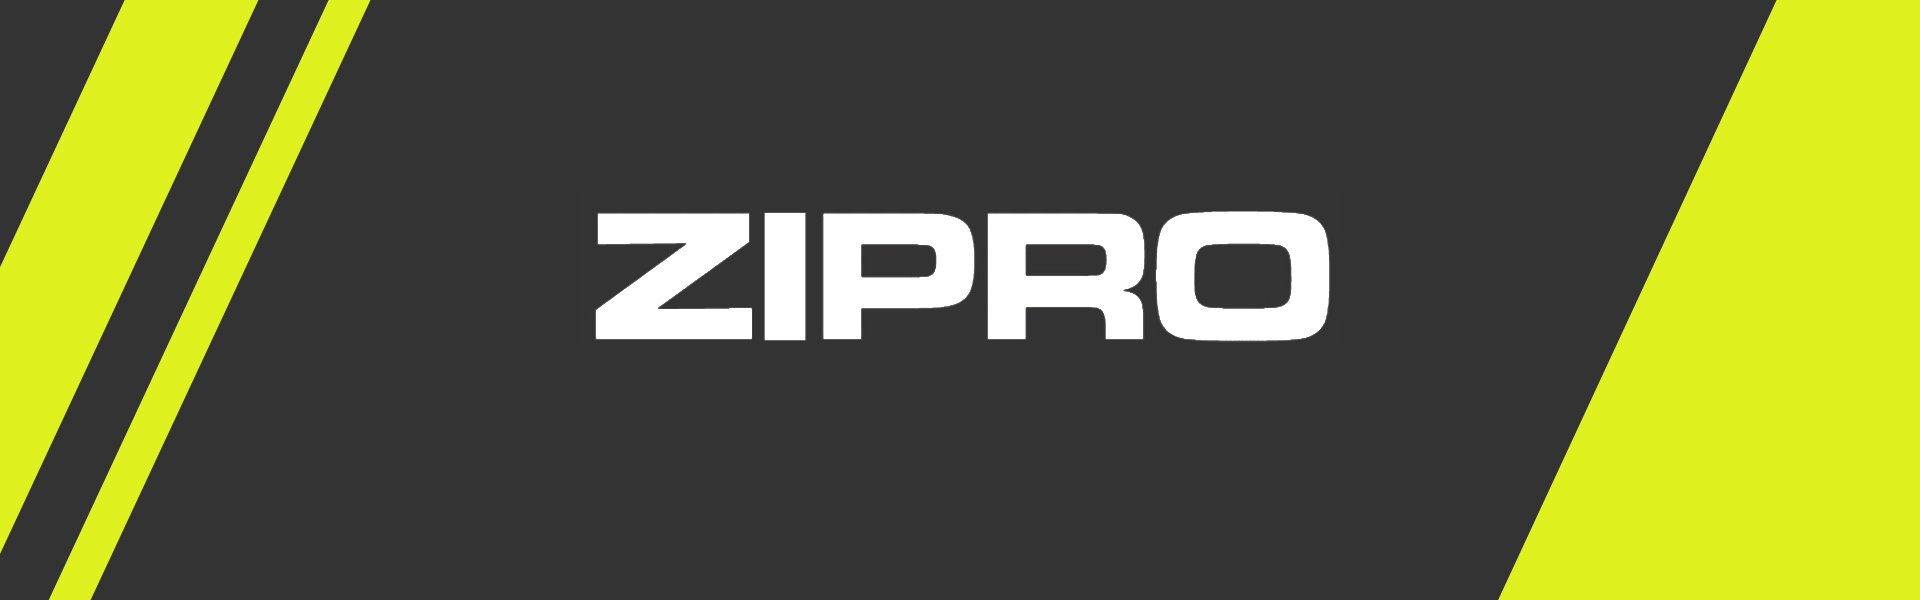 Pretestības gumiju komplekts Zipro, 62-70 cm, 3 gab. Zipro